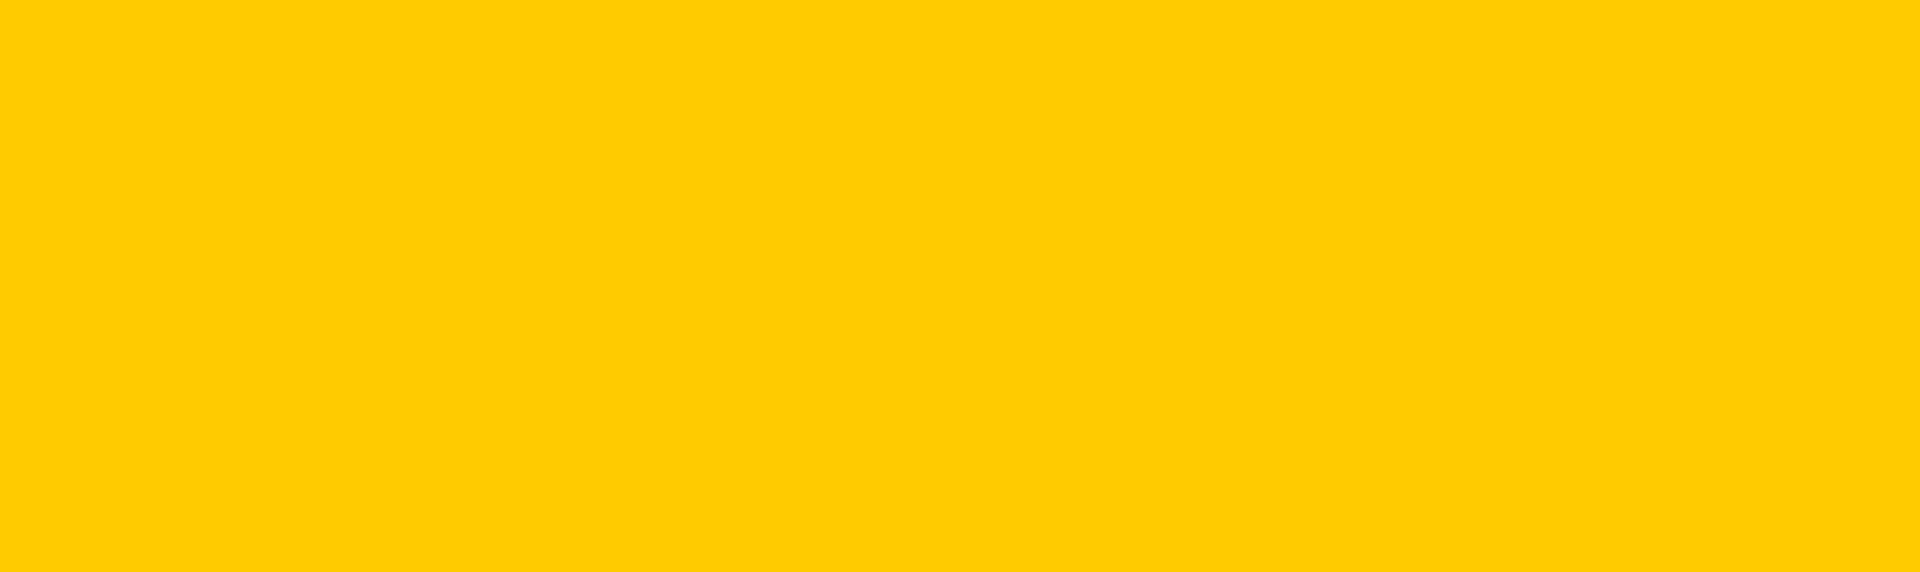 Un primo piano di uno sfondo giallo brillante.